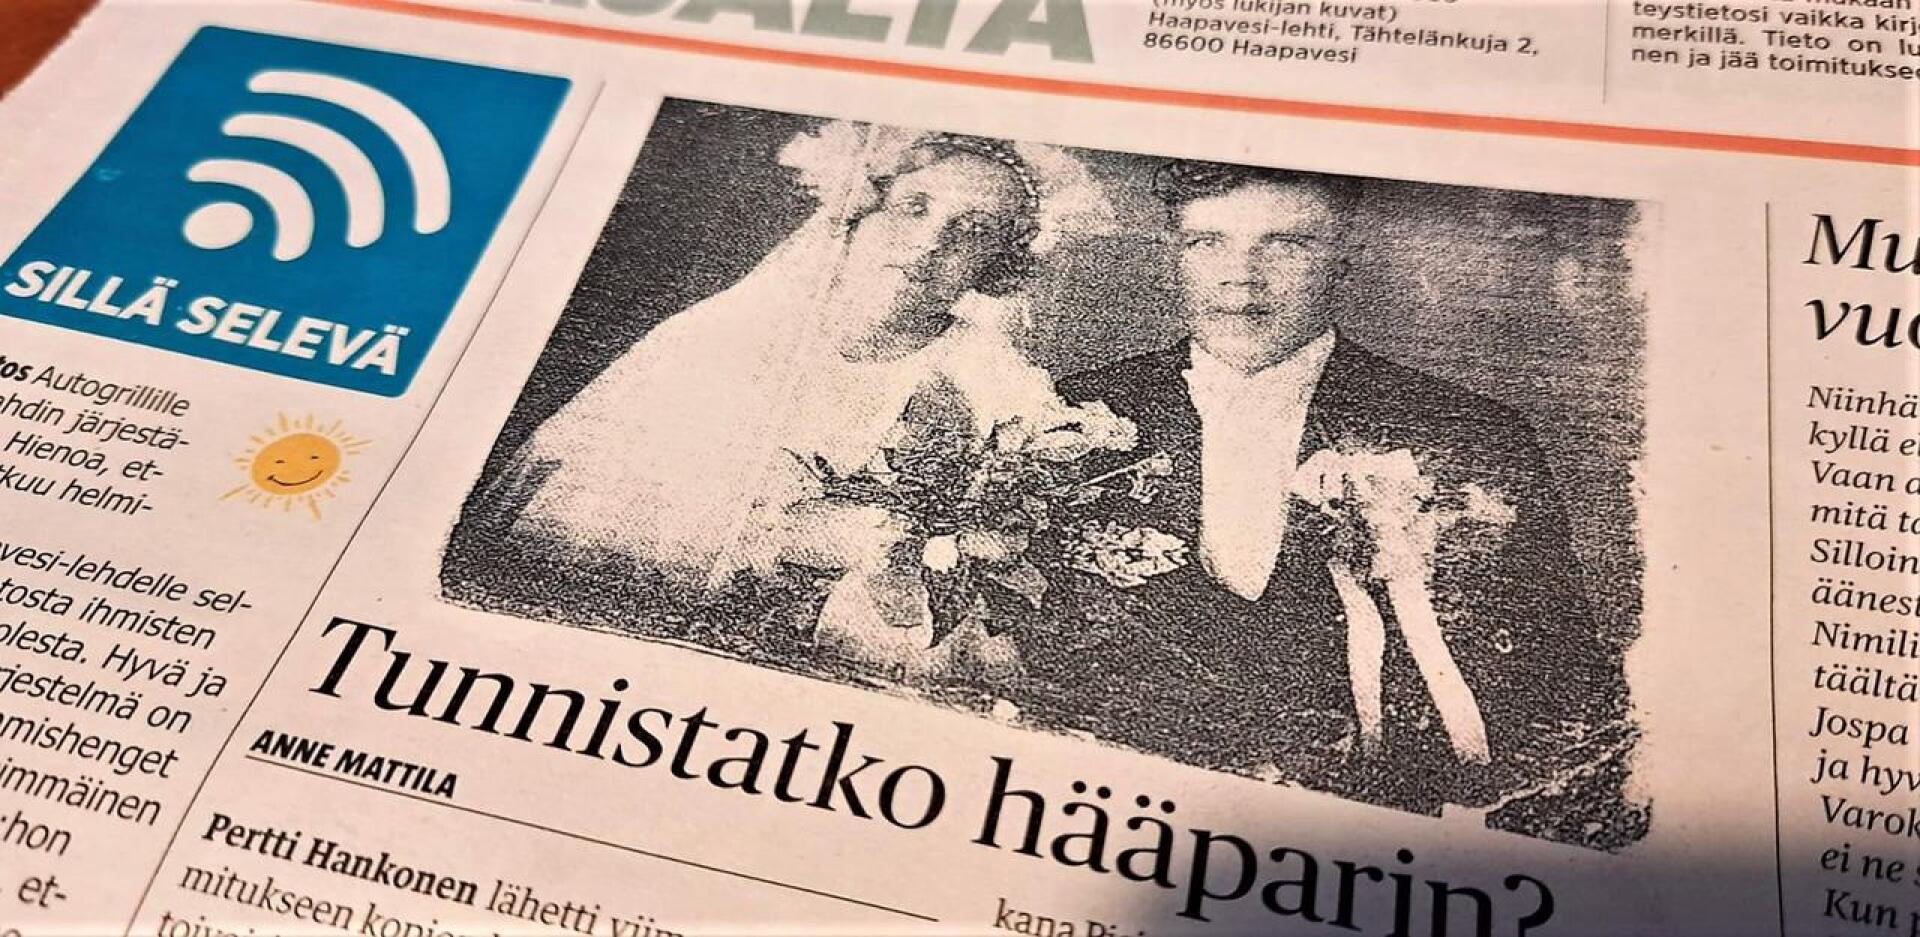 Paavo Mäkelä sanoo, että kuvassa ei ole Veikko Hatunen, joka oli hänen äitinsä ensimmäinen puoliso.